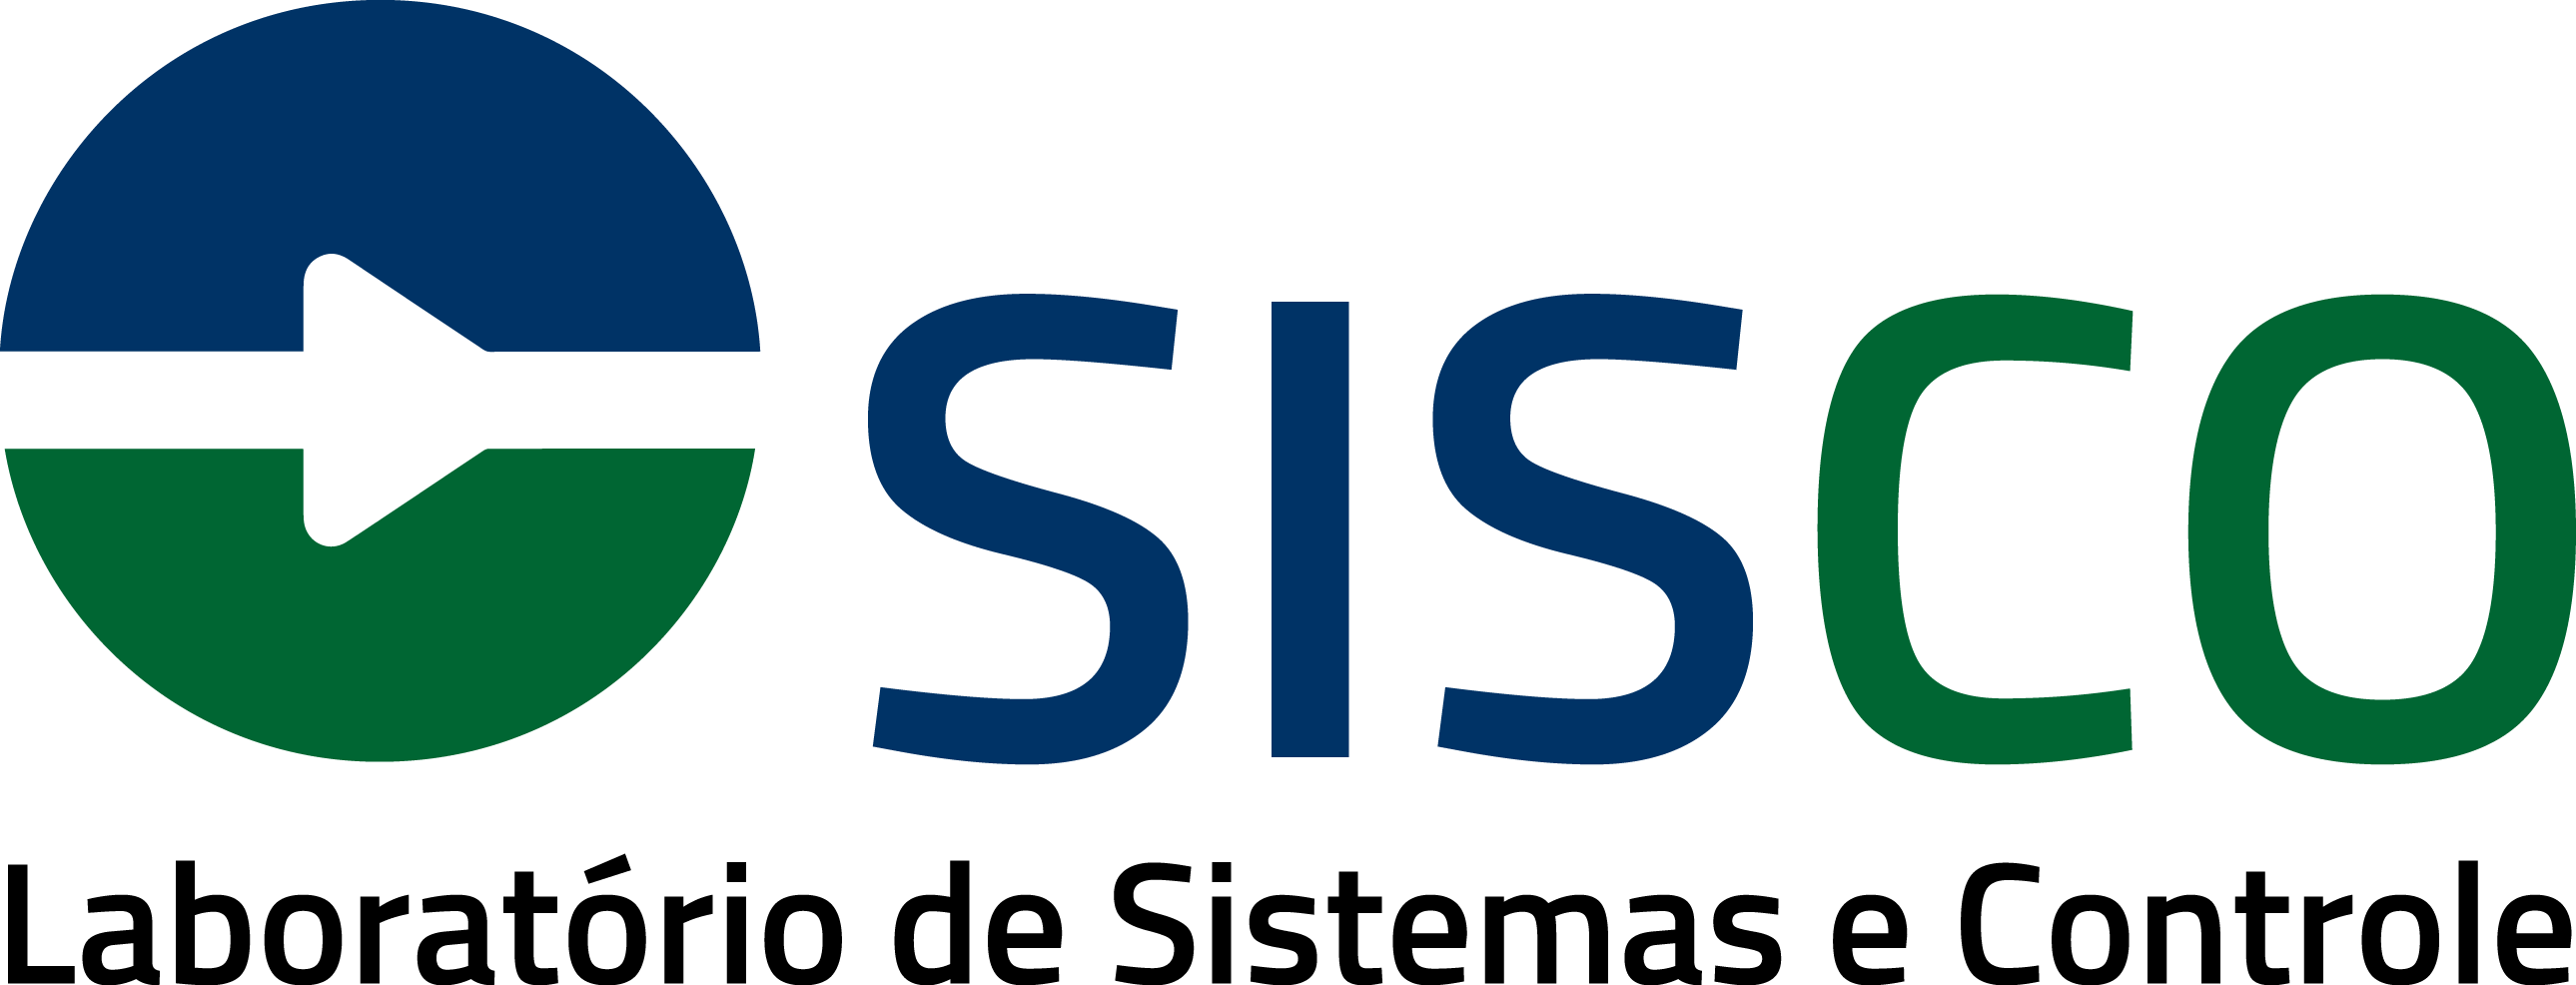 SISCO Logo Completo